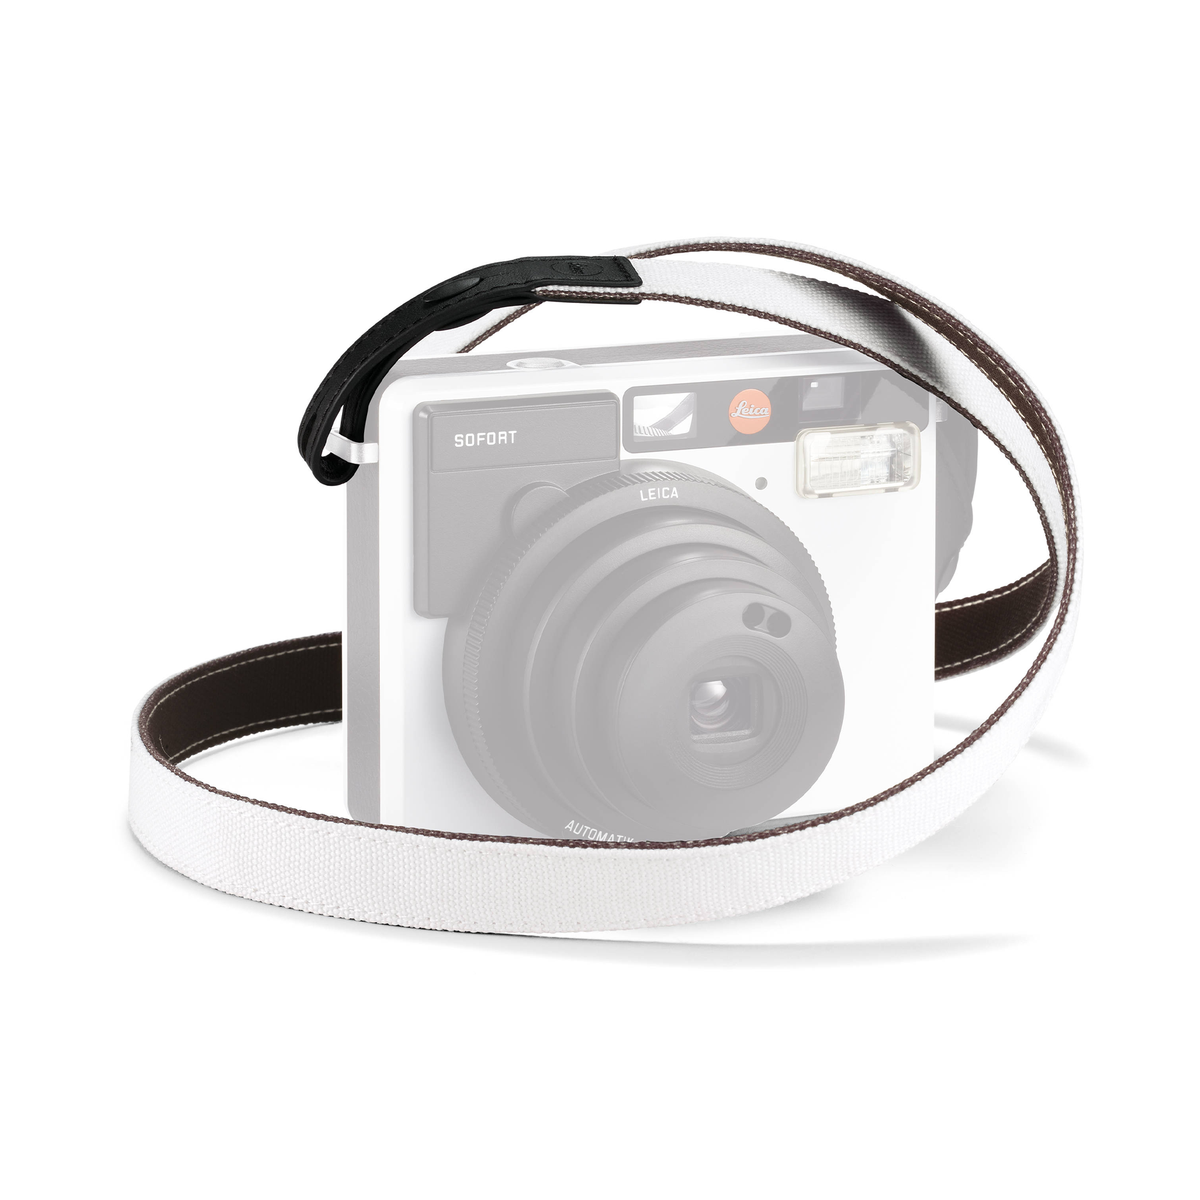 Leica Strap for Sofort Instant Film Camera - White/Black — Glazer's Camera